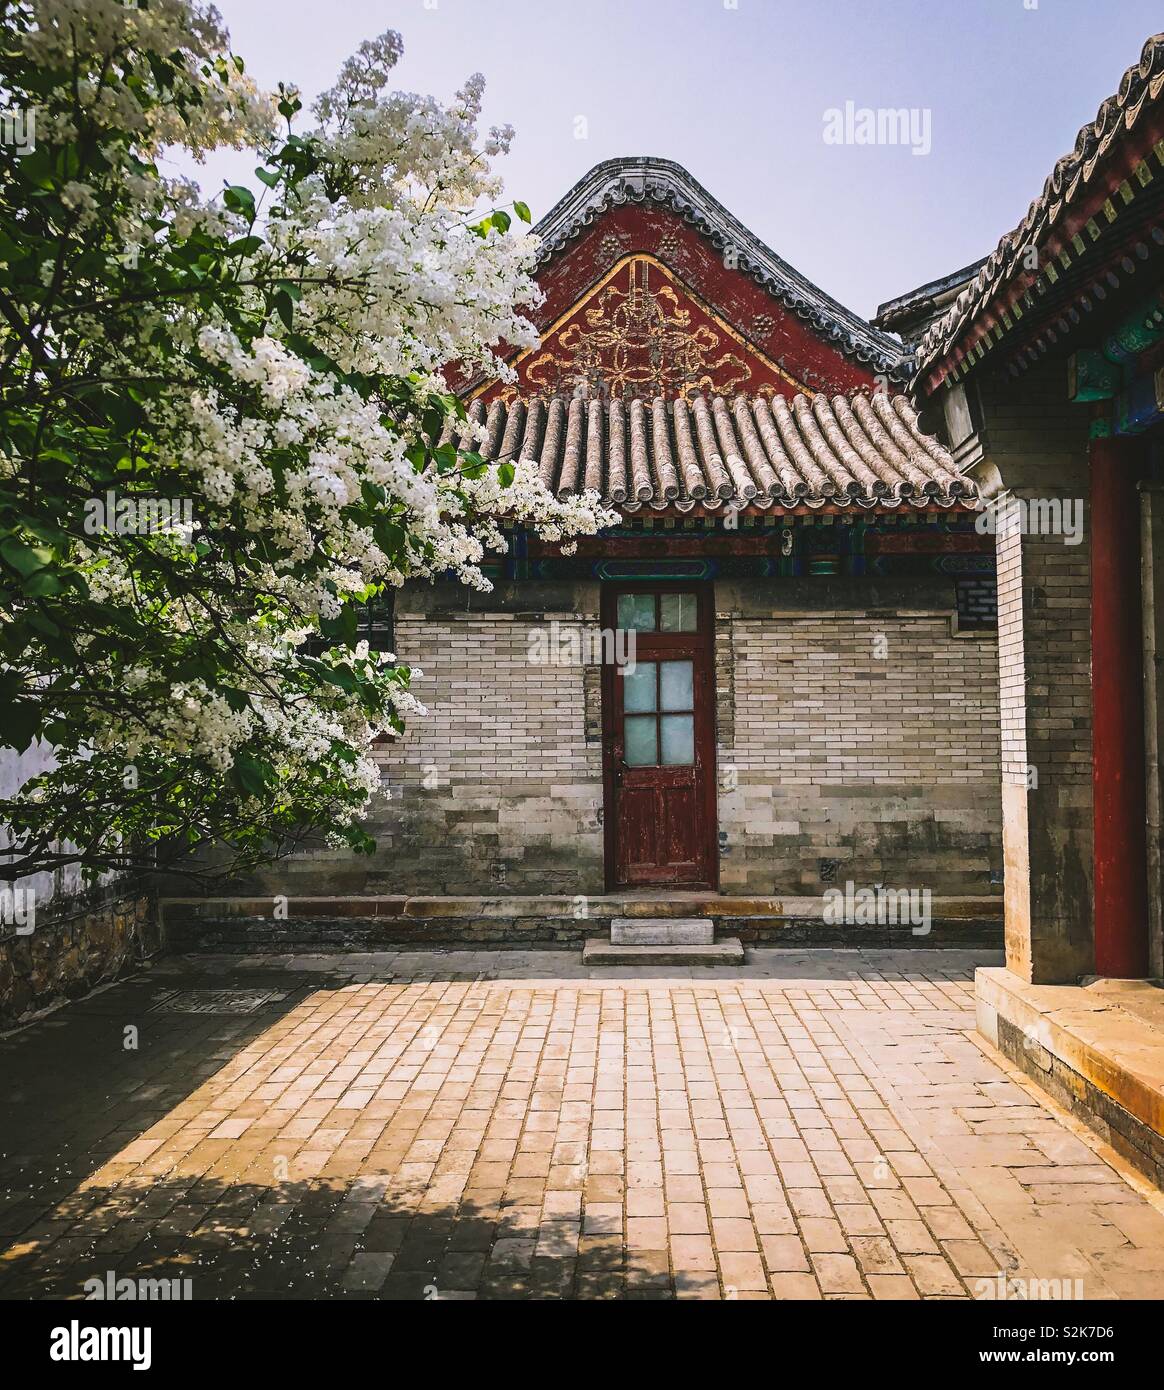 Hof mit Haus mit verzierten Gabel und Tür neben einem blühenden Baum, in der Verbotenen Stadt, Peking, China Stockfoto